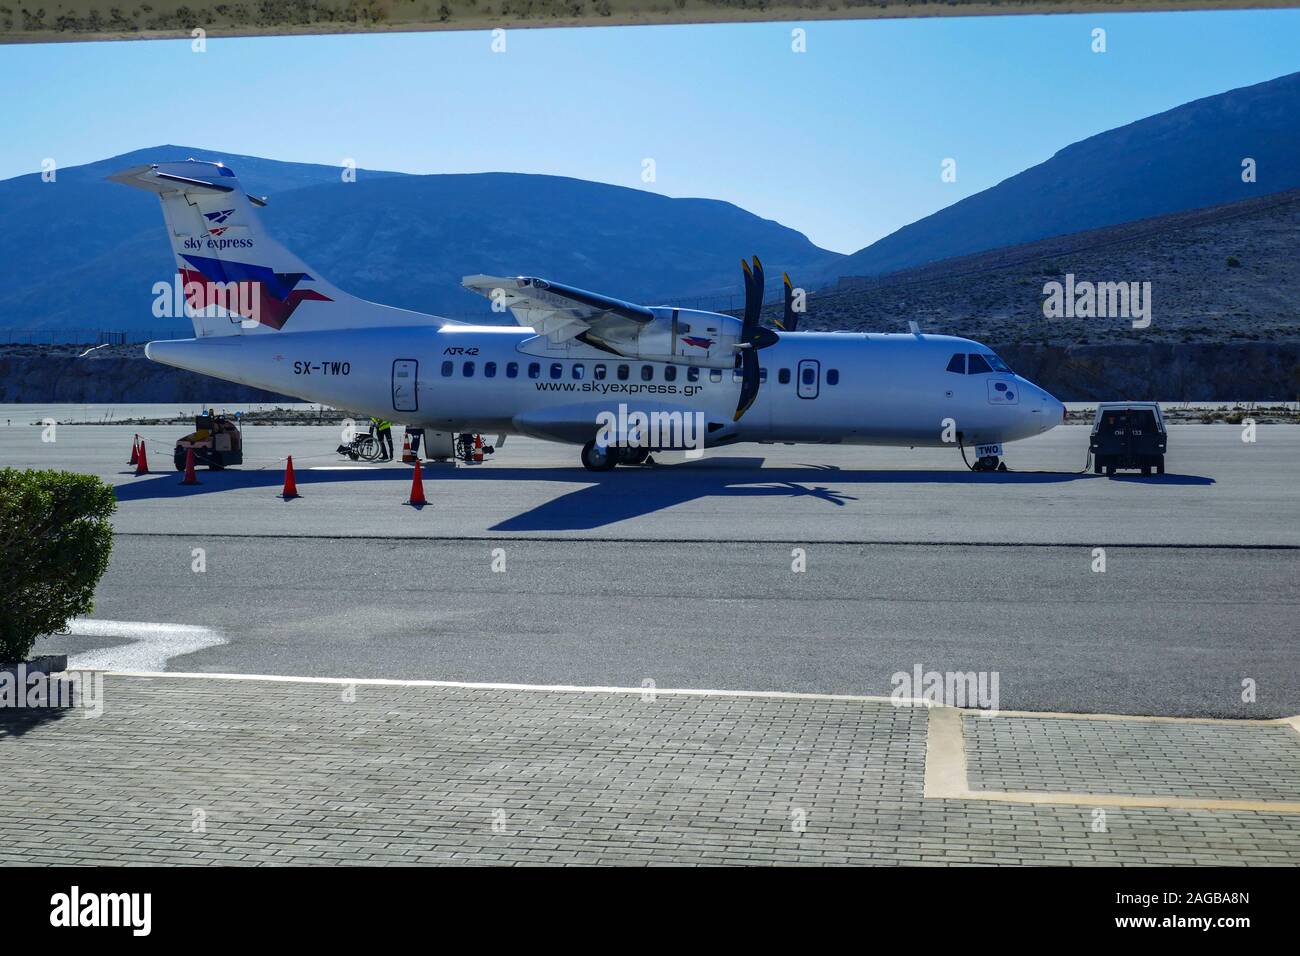 Sky Express ATR 42 velivolo sul piazzale dell'aeroporto dell'isola, Kalymnos Grecia Foto Stock